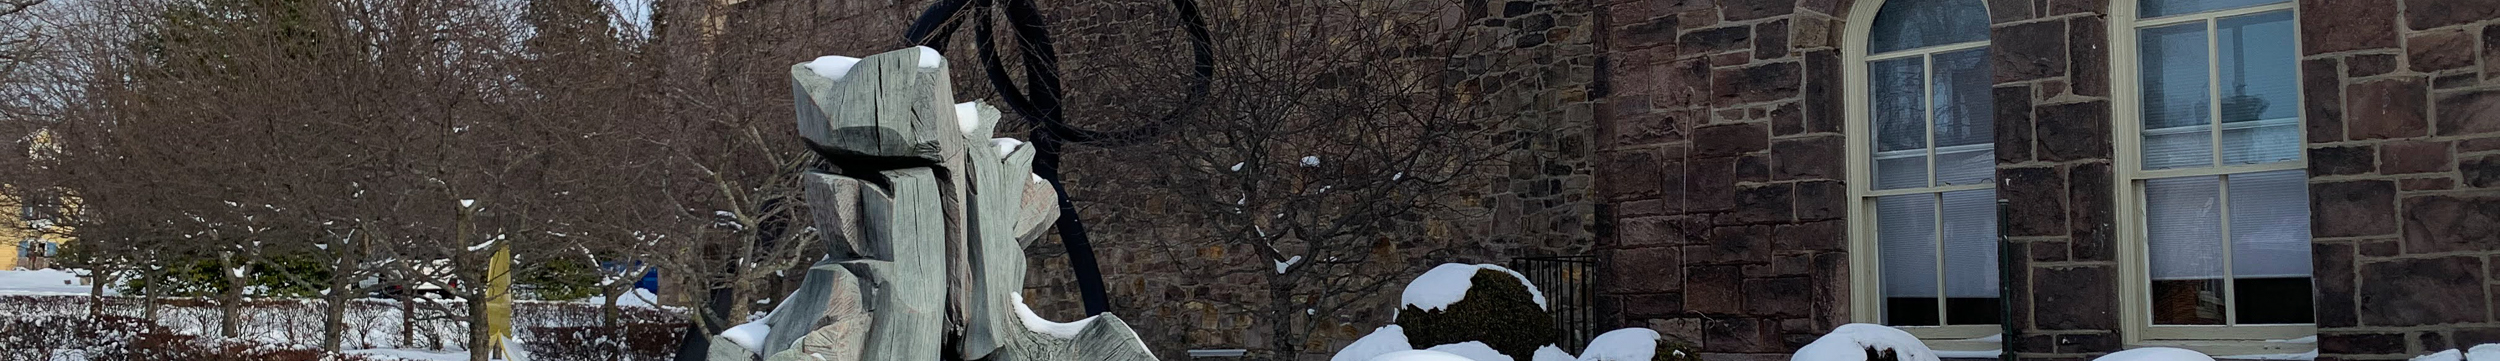 outdoor sculpture in winter snow